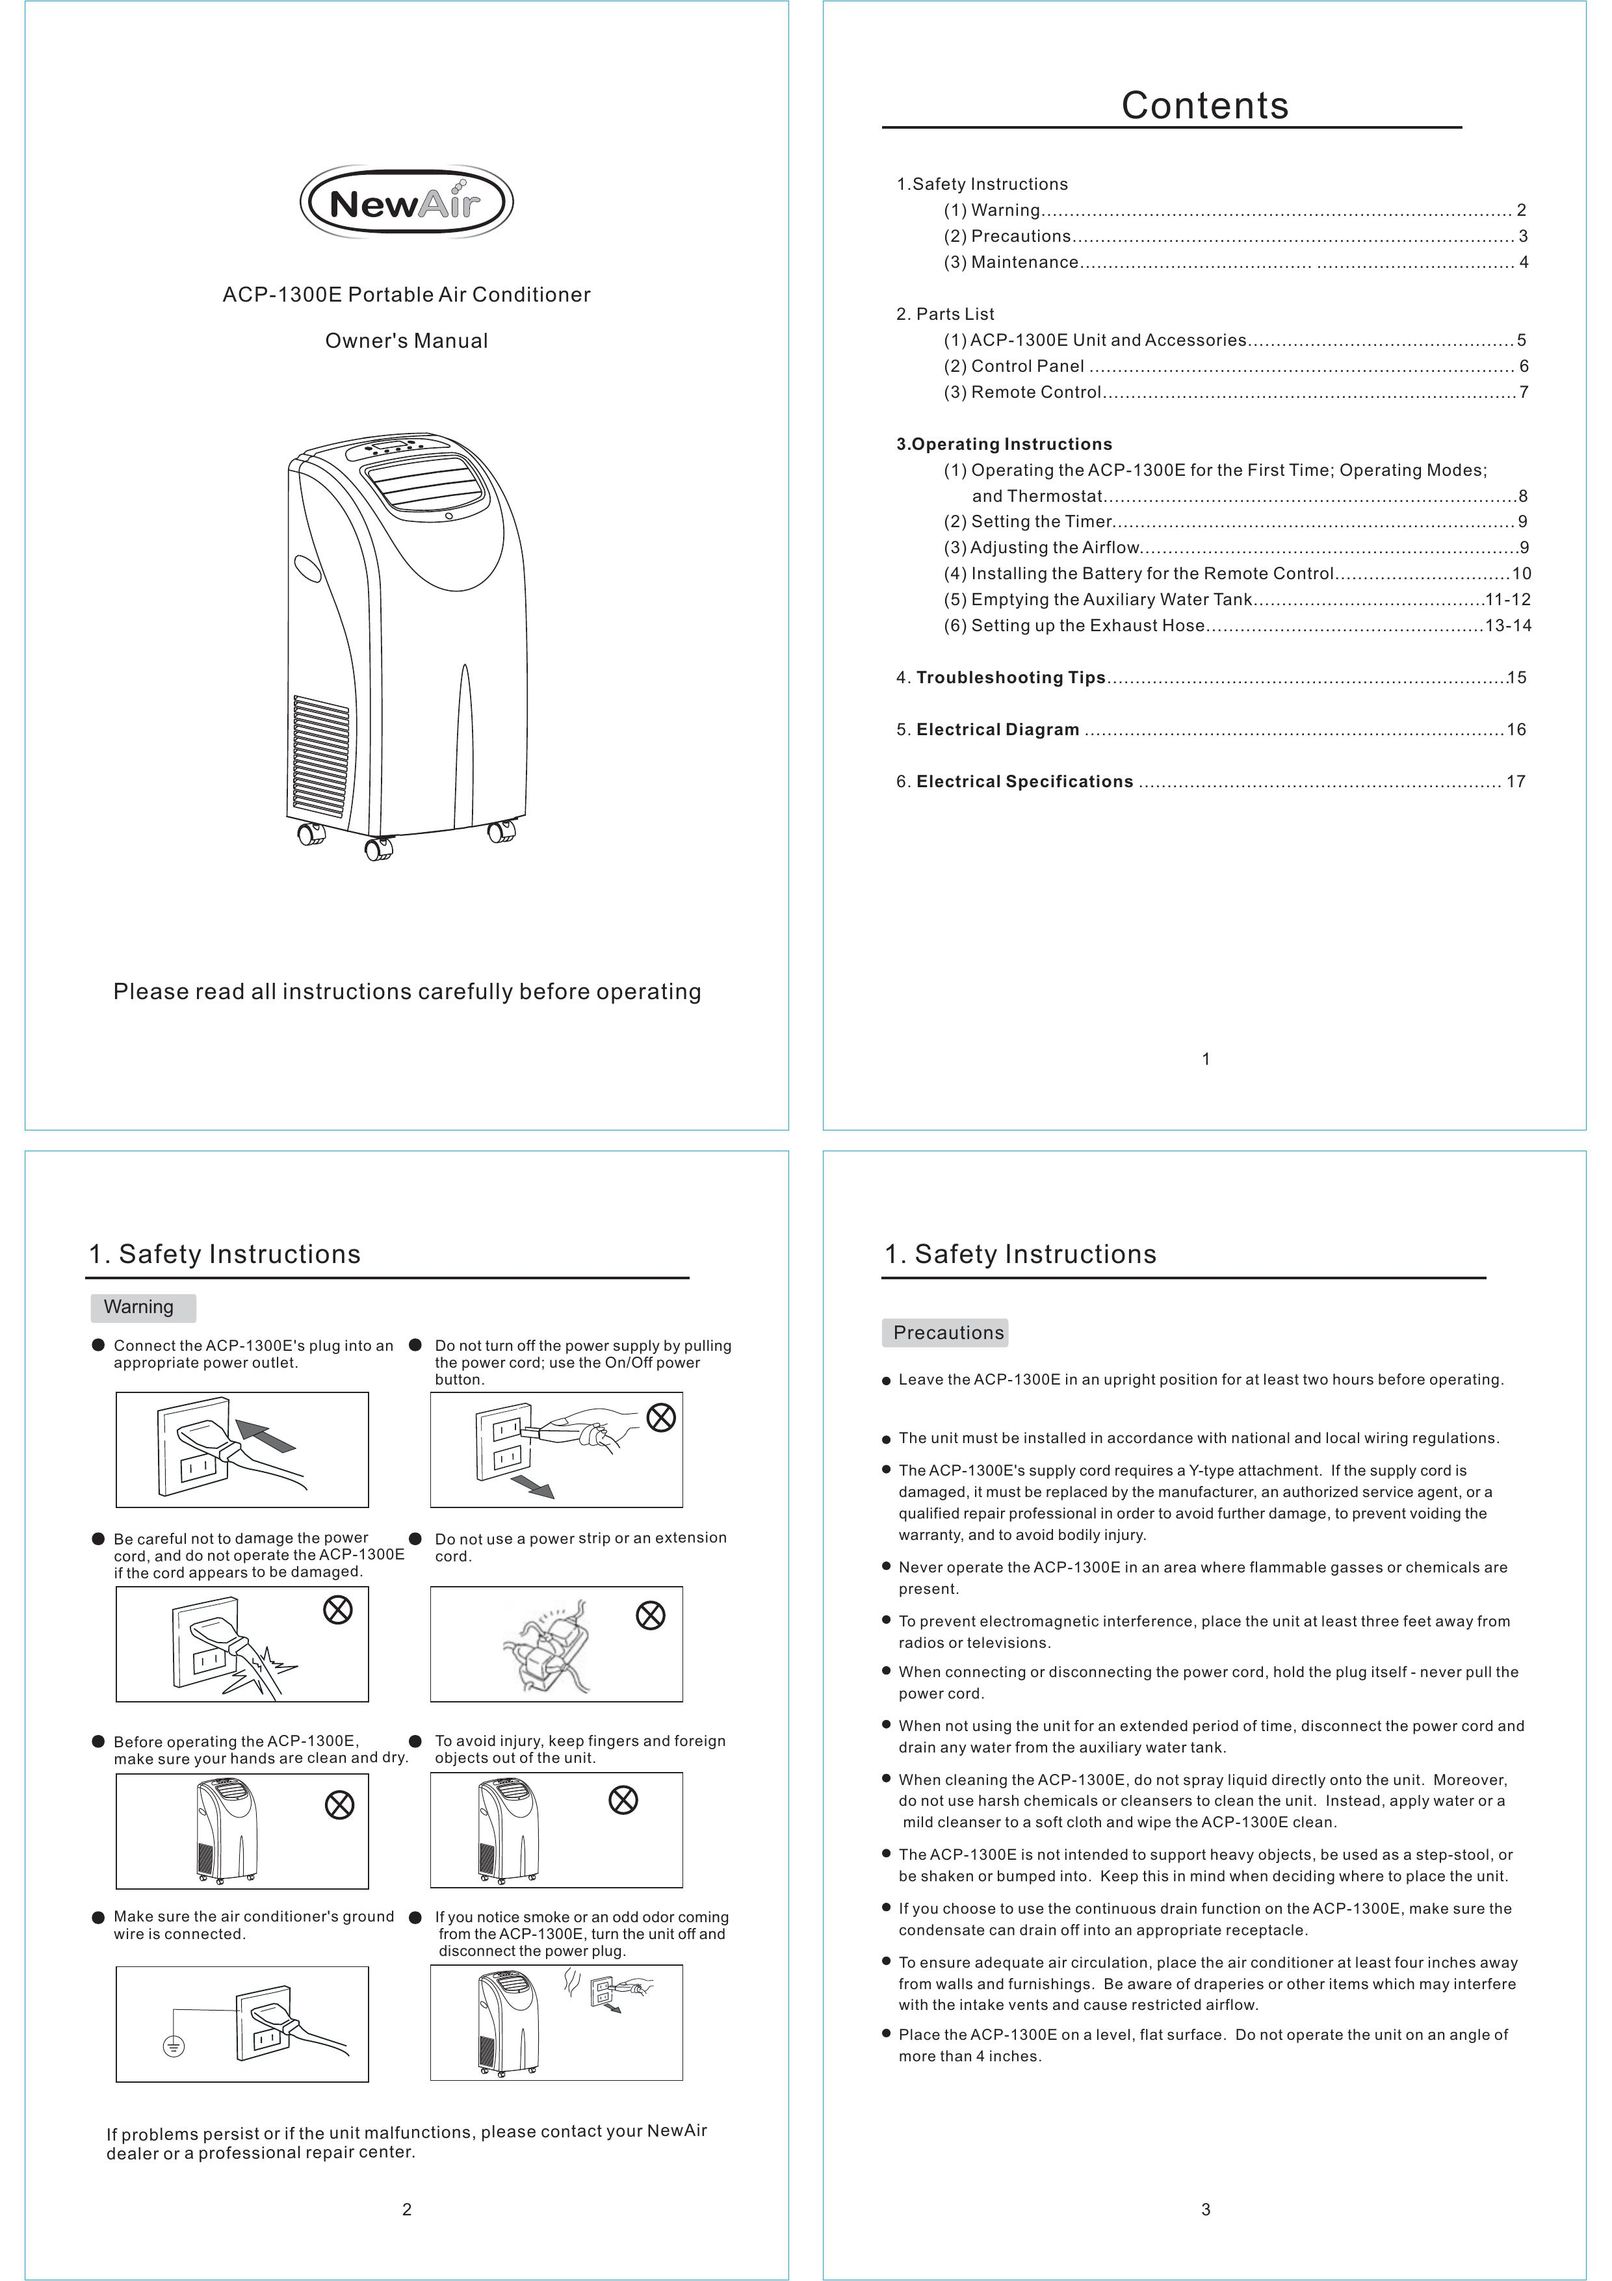 NewAir ACP-1300E Air Conditioner User Manual